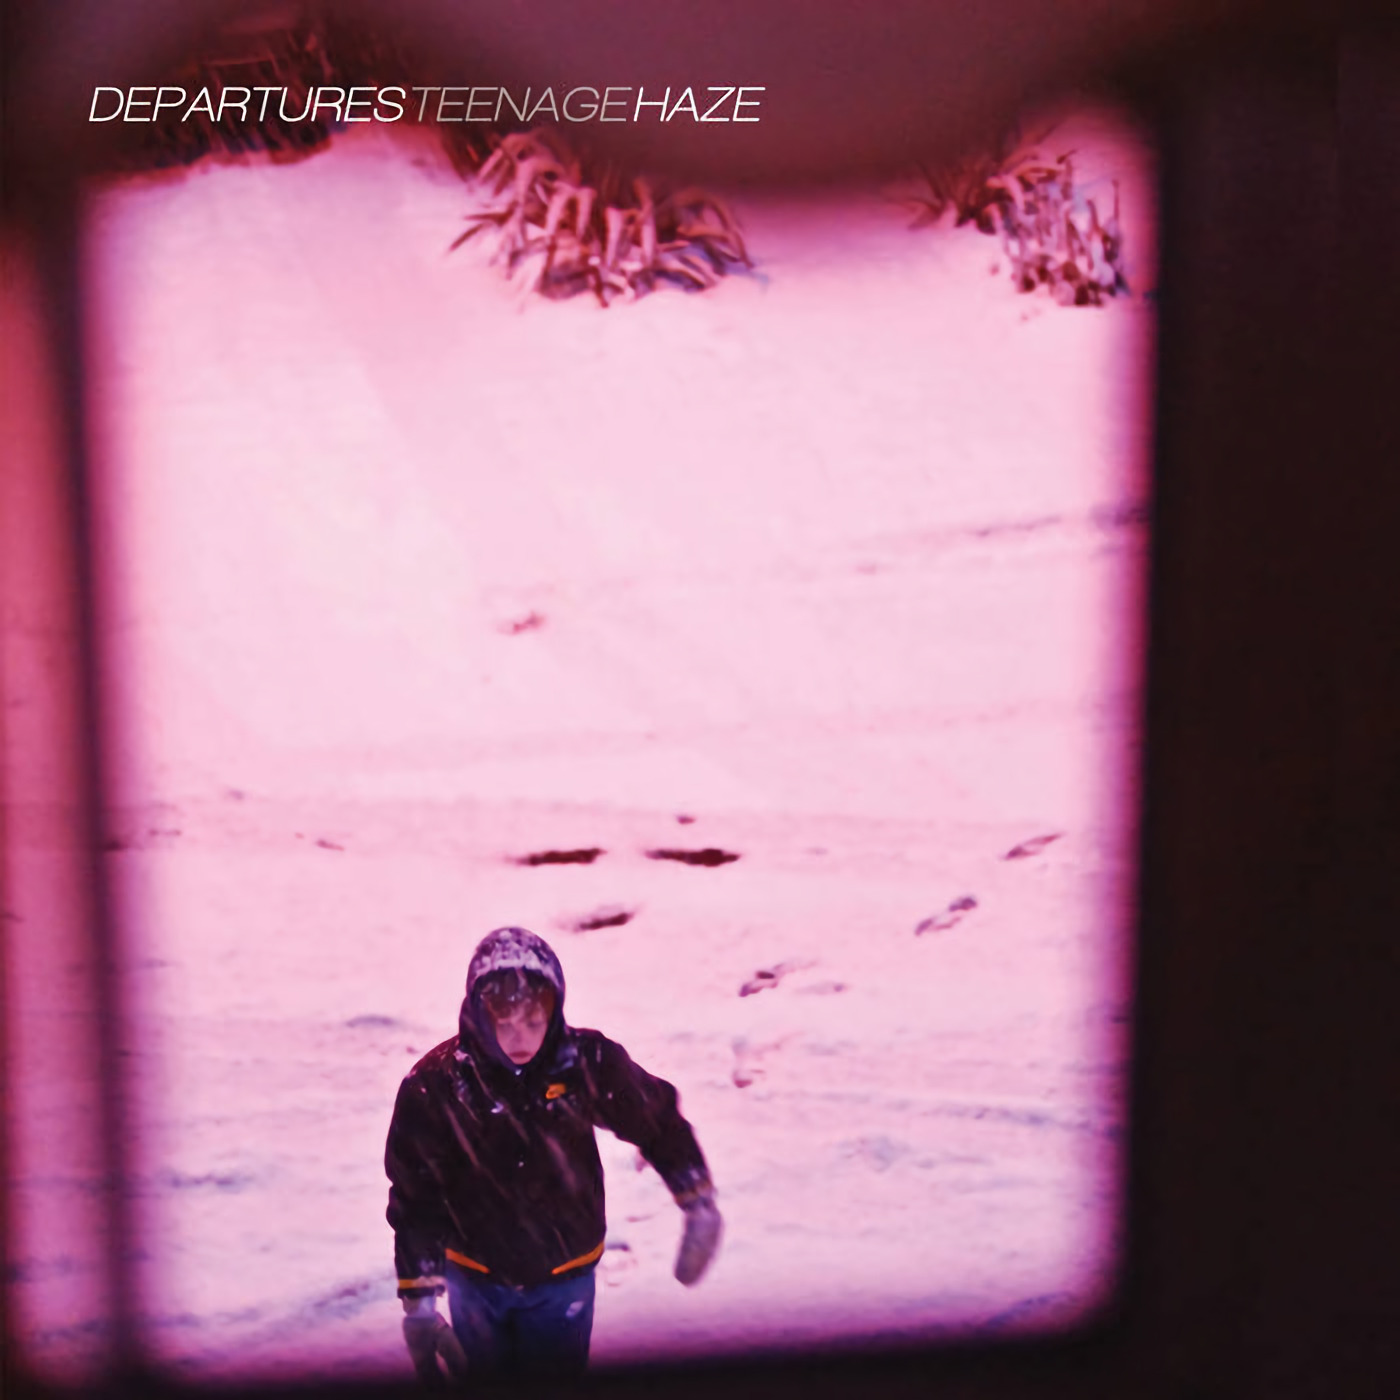 TEENAGE HAZE / Departures